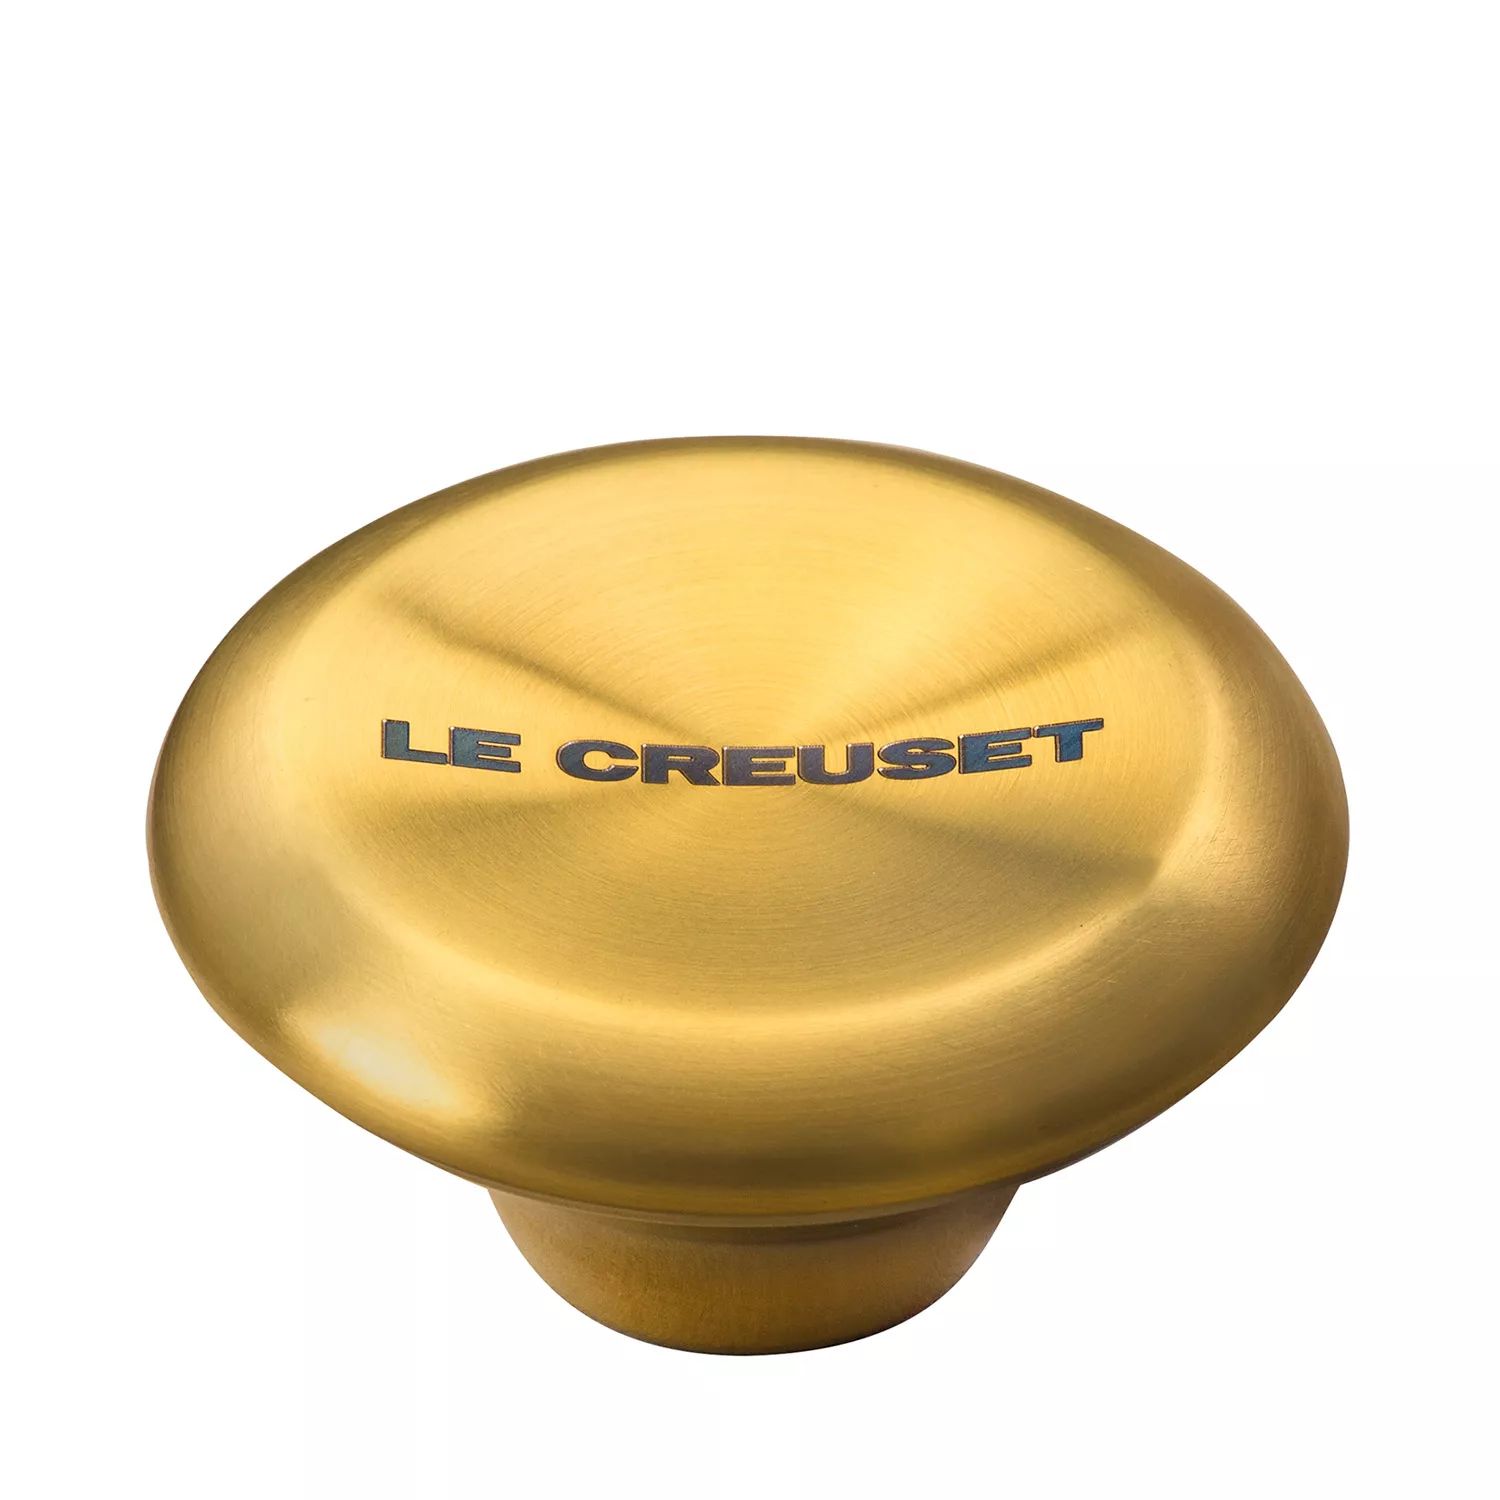 Le Creuset Signature Gold Knob | Sur La Table